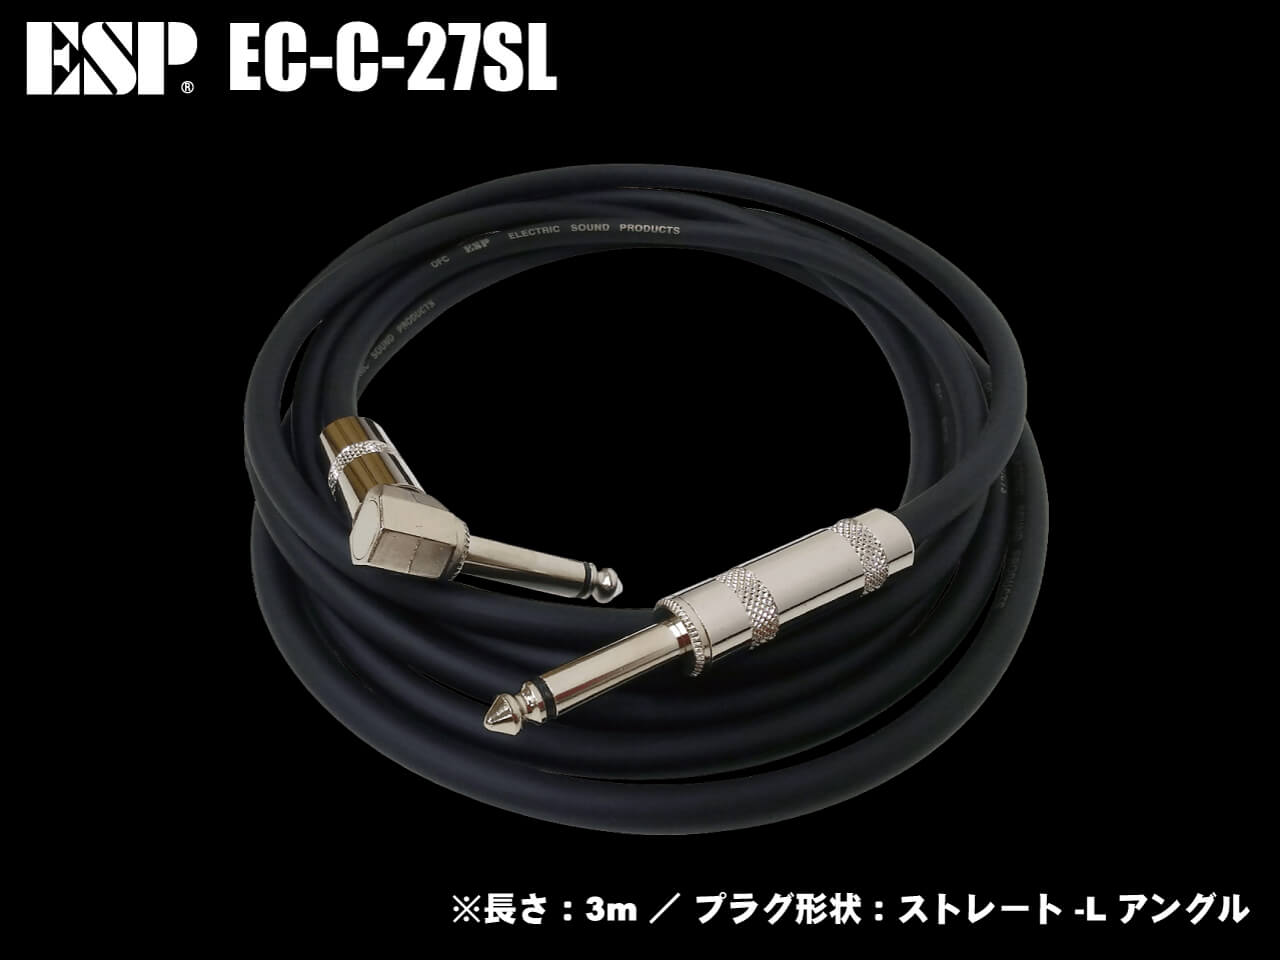 ESP(イーエスピー) EC-C-27SL / 3m-SL (ギター/ベースシールド)